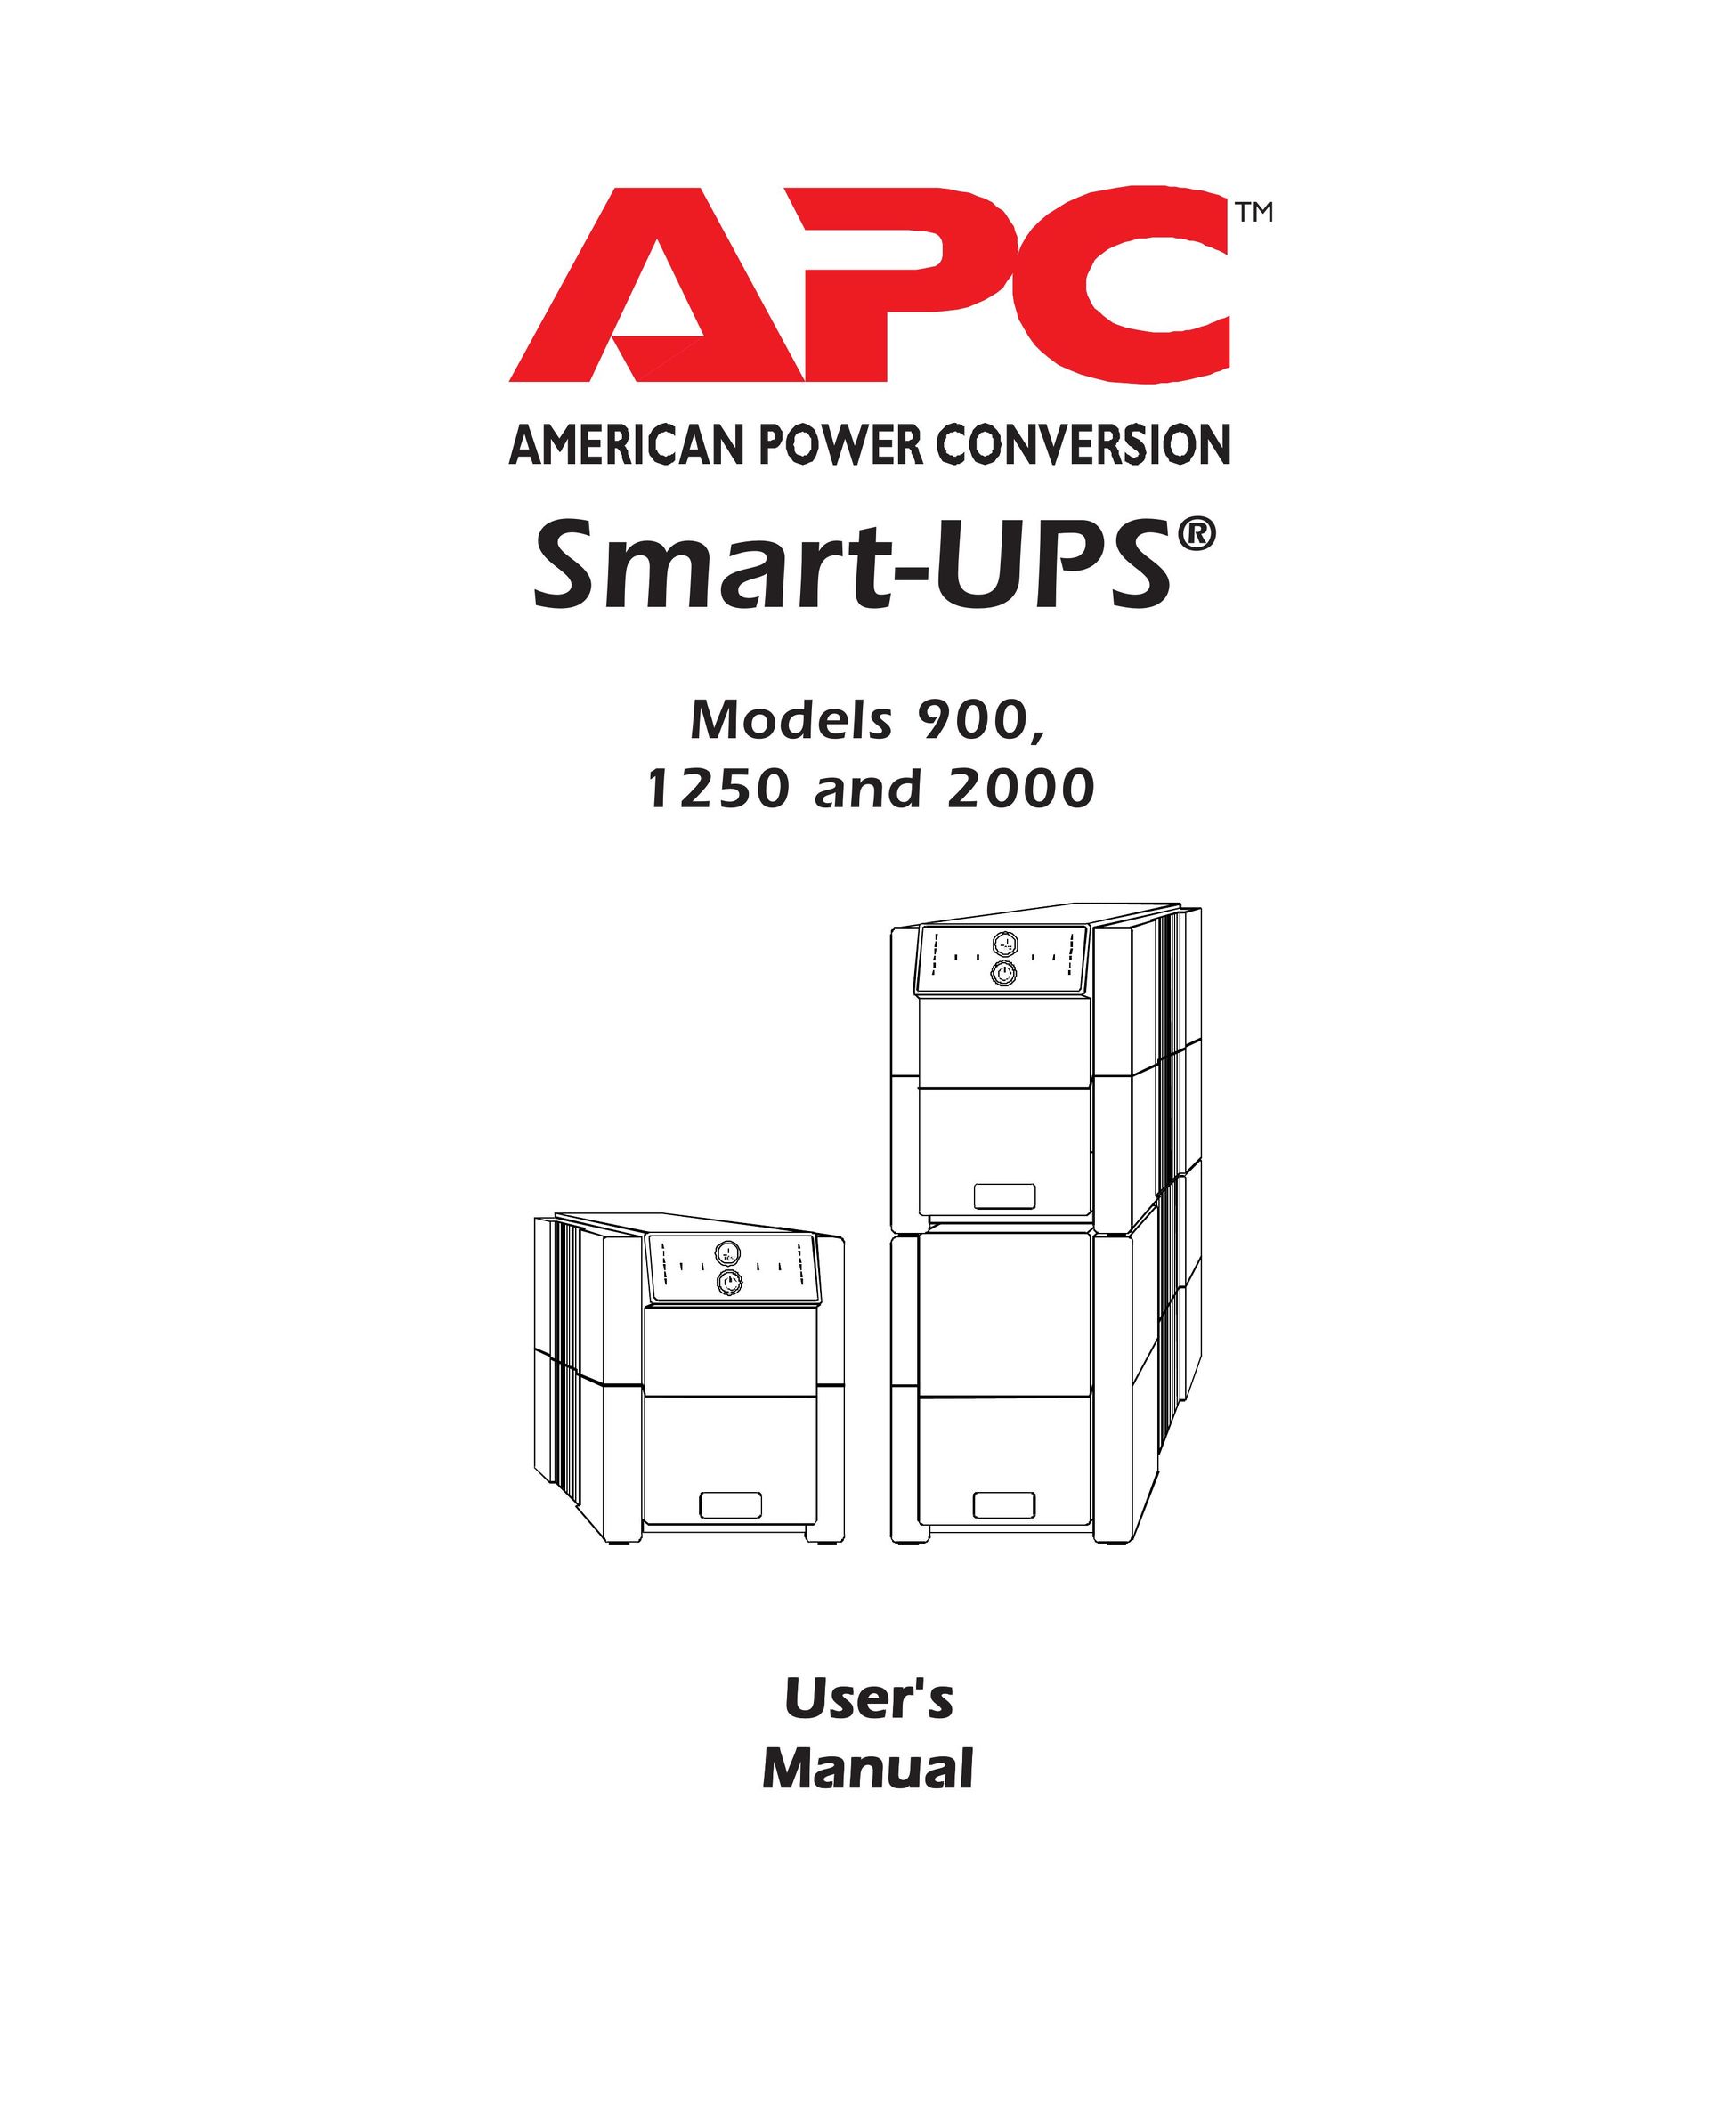 APC 900 Printer User Manual